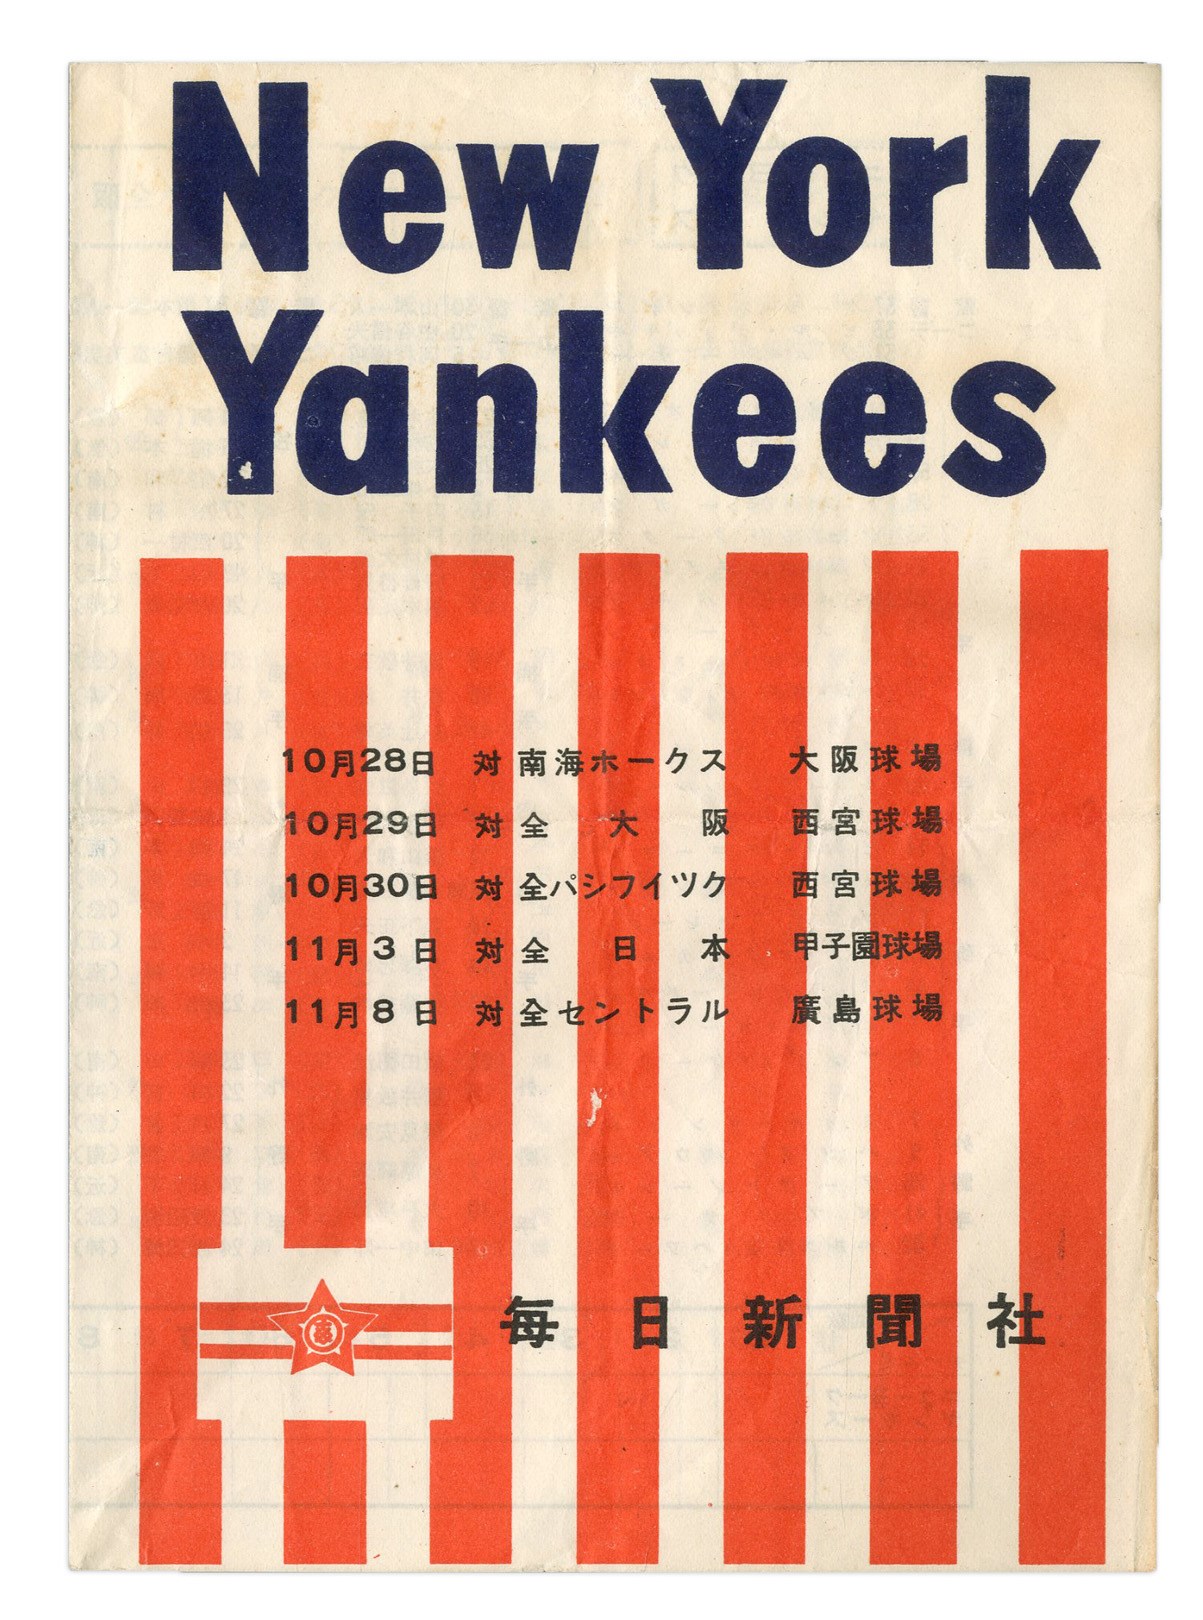 Negro League, Latin, Japanese & International Base - 1955 NY Yankees Tour of Japan Scorecard